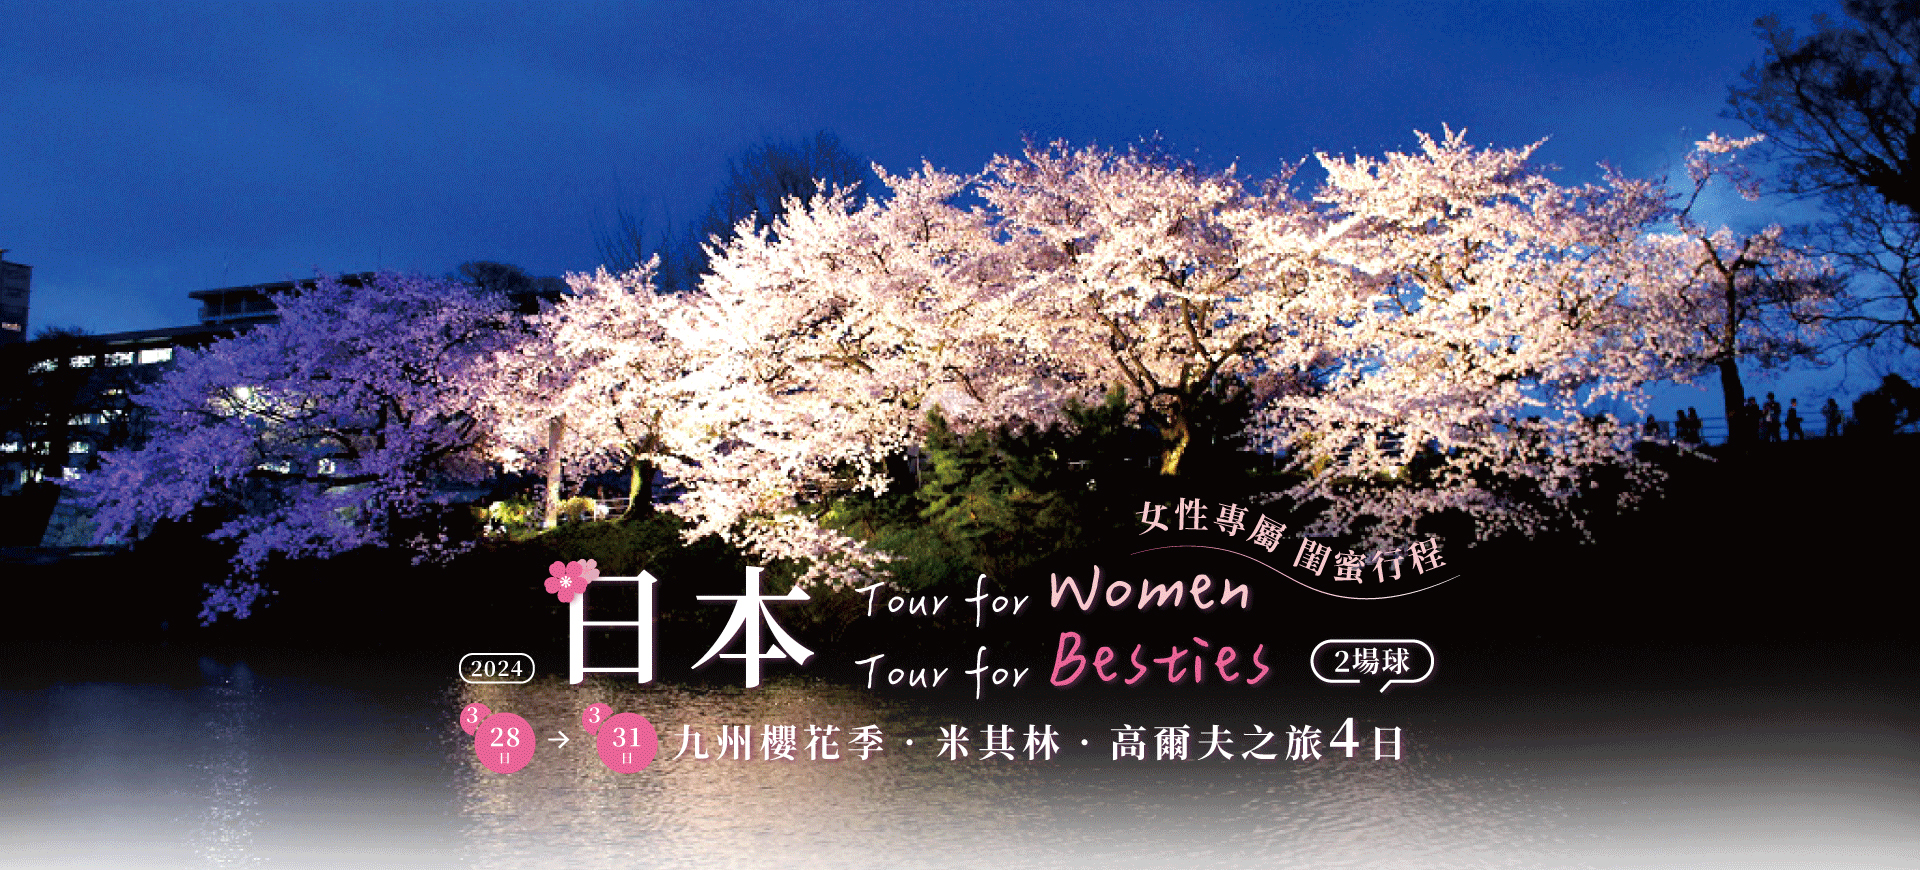 鷹飛國際旅行社 Infinity Tour | 日本九州 | 女性專屬 閨蜜行程．櫻花季．高爾夫之旅4日